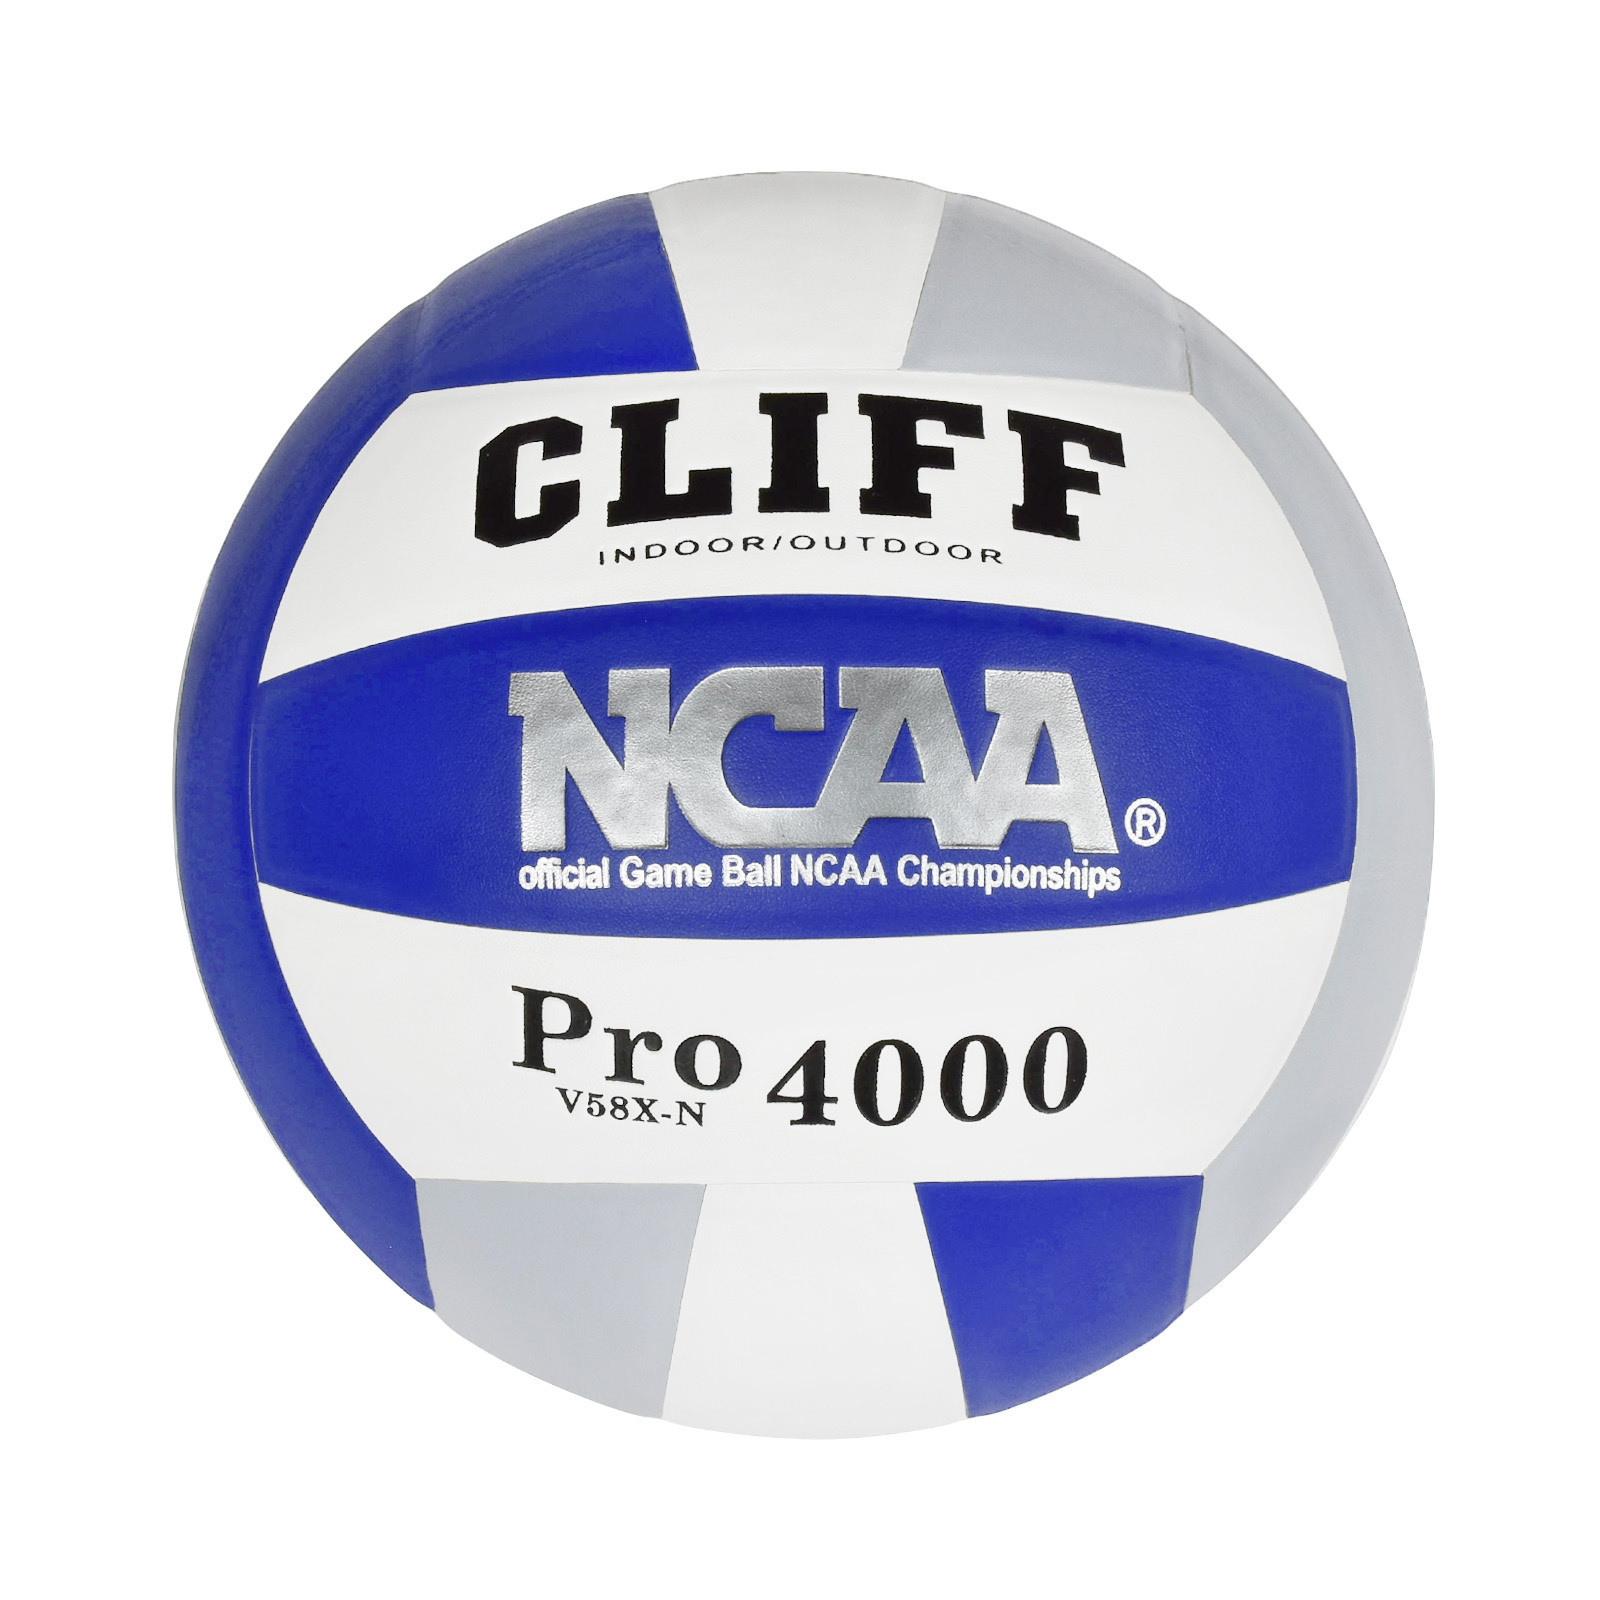 Мяч волейбольный CLIFF Pro 4000, 5 размер, PU, бело-синий